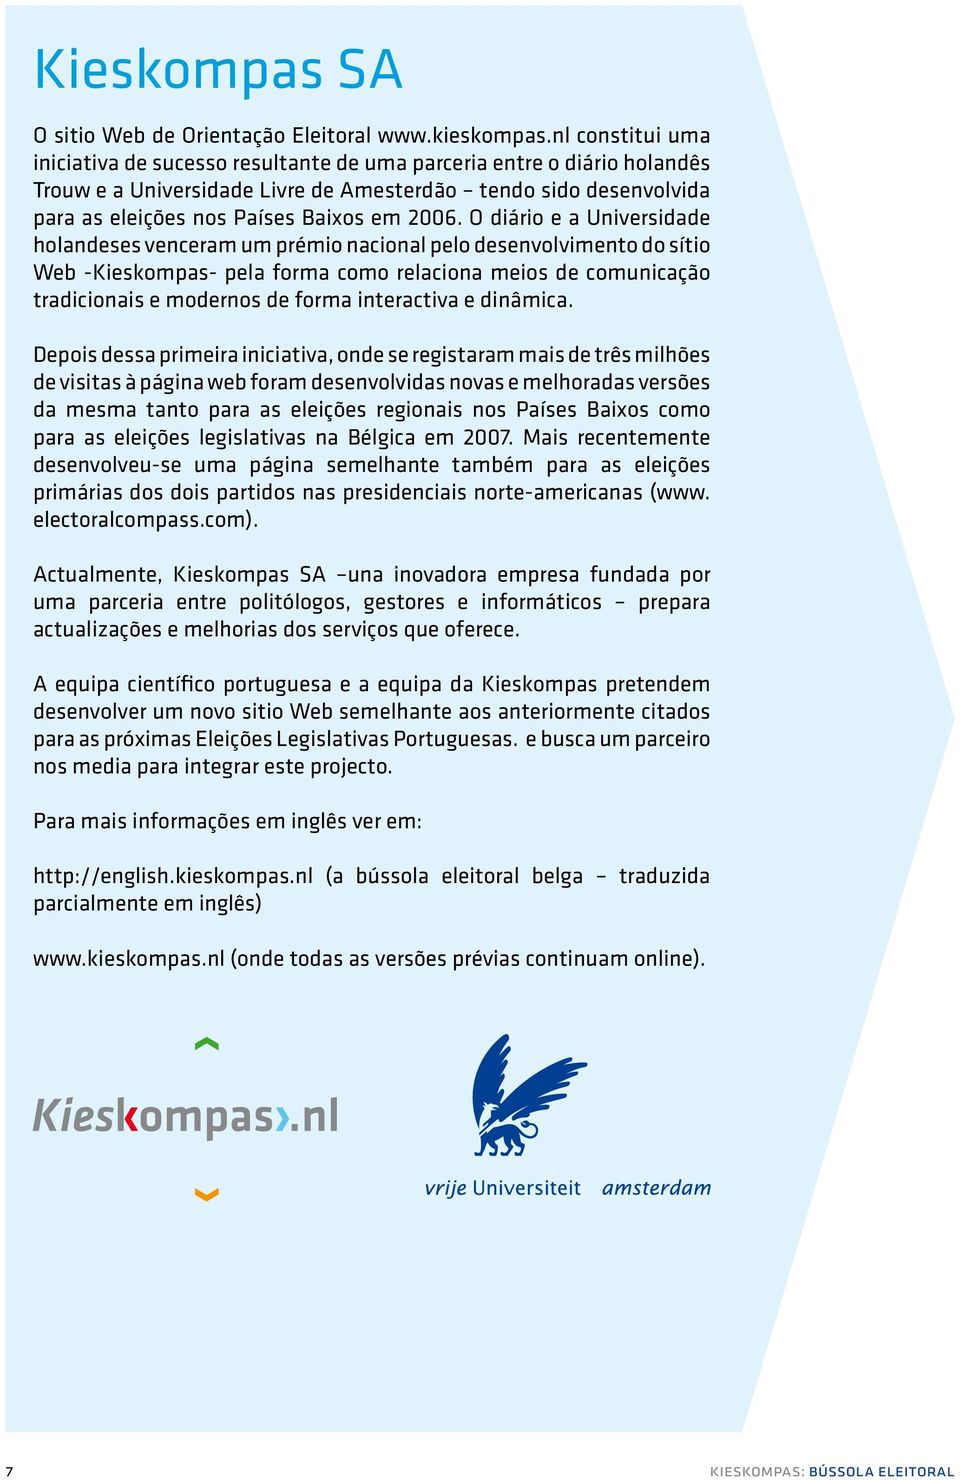 O diário e a Universidade holandeses venceram um prémio nacional pelo desenvolvimento do sítio Web -Kieskompas- pela forma como relaciona meios de comunicação tradicionais e modernos de forma